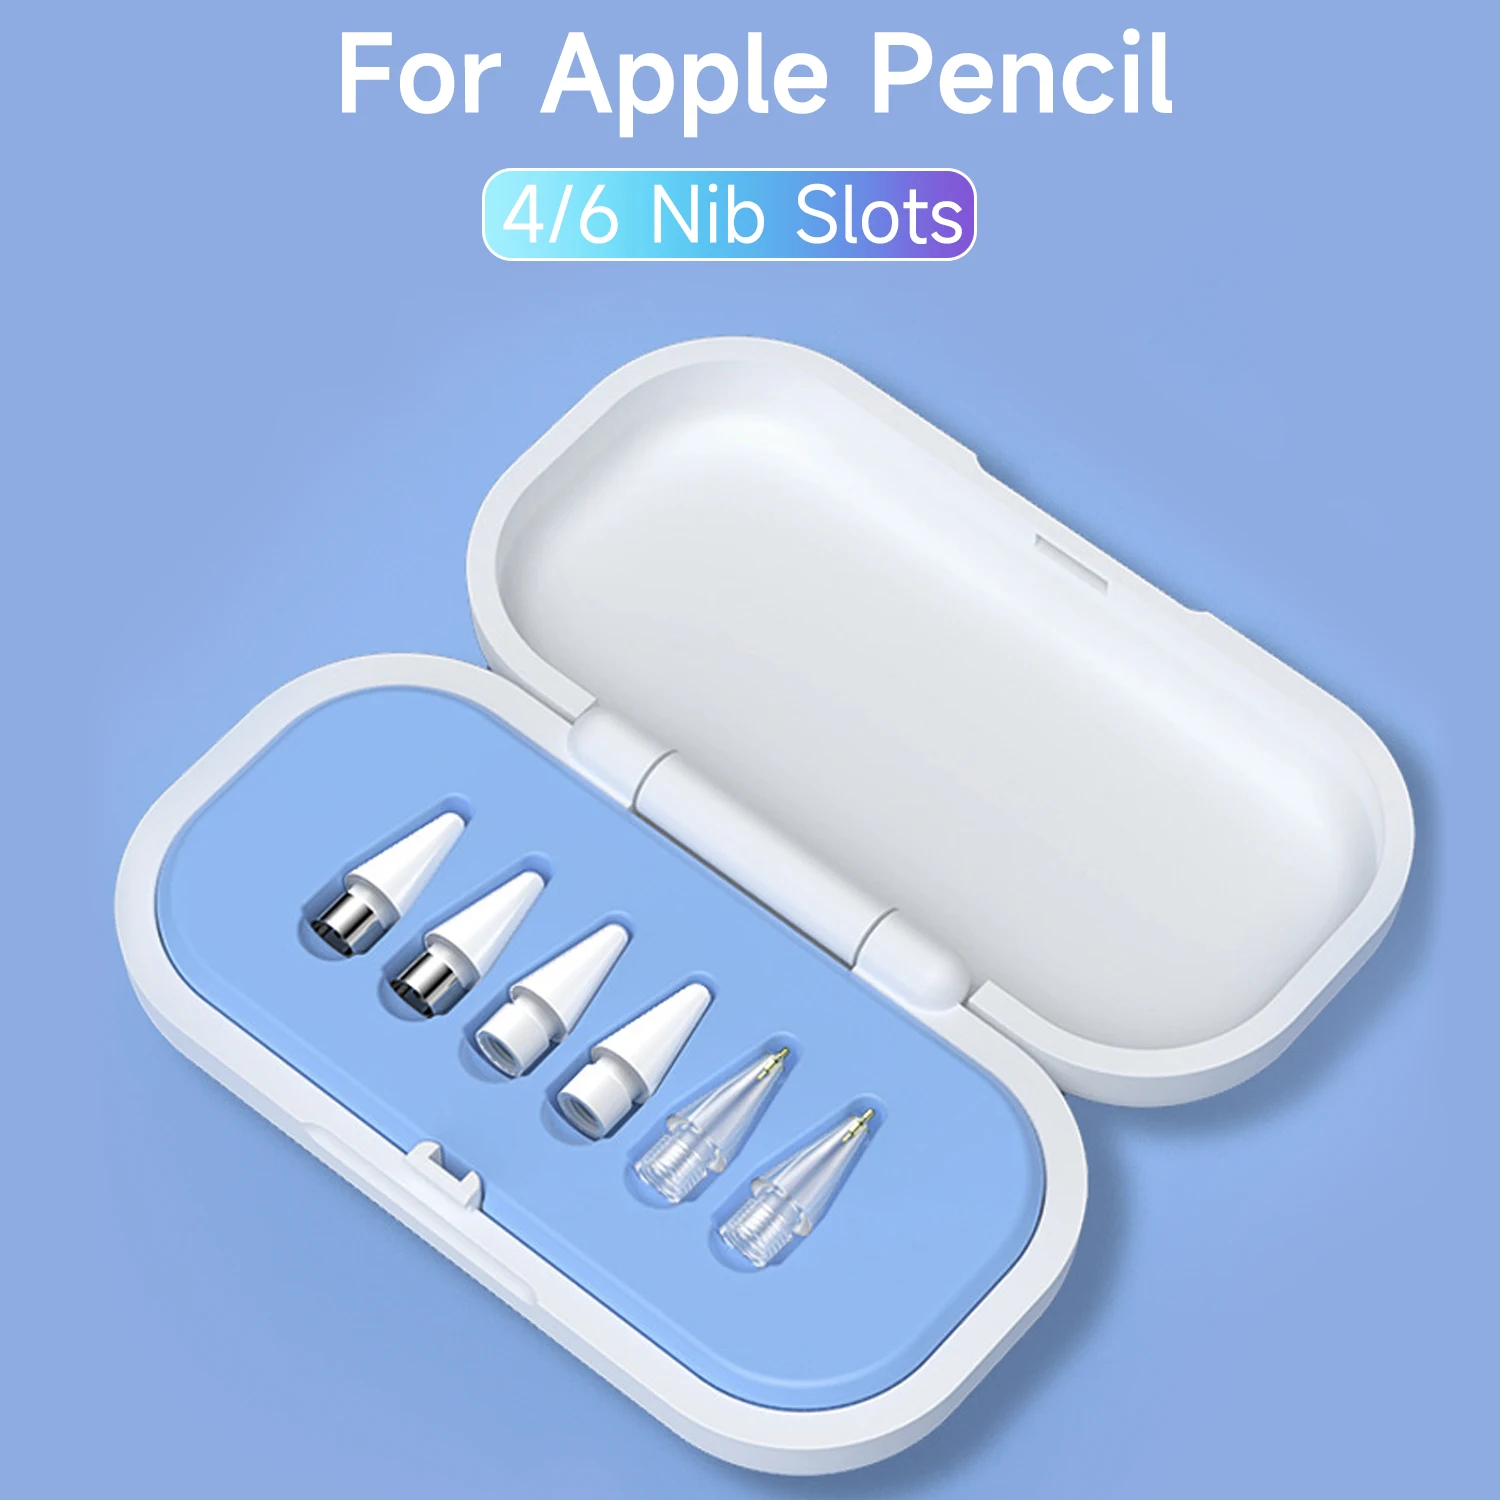 애플 펜슬용 연필 팁 보관함, 긁힘 방지 보호 케이스 커버, 4 개, 6 개, 아이펜슬 스타일러스 펜 펜촉 정리함